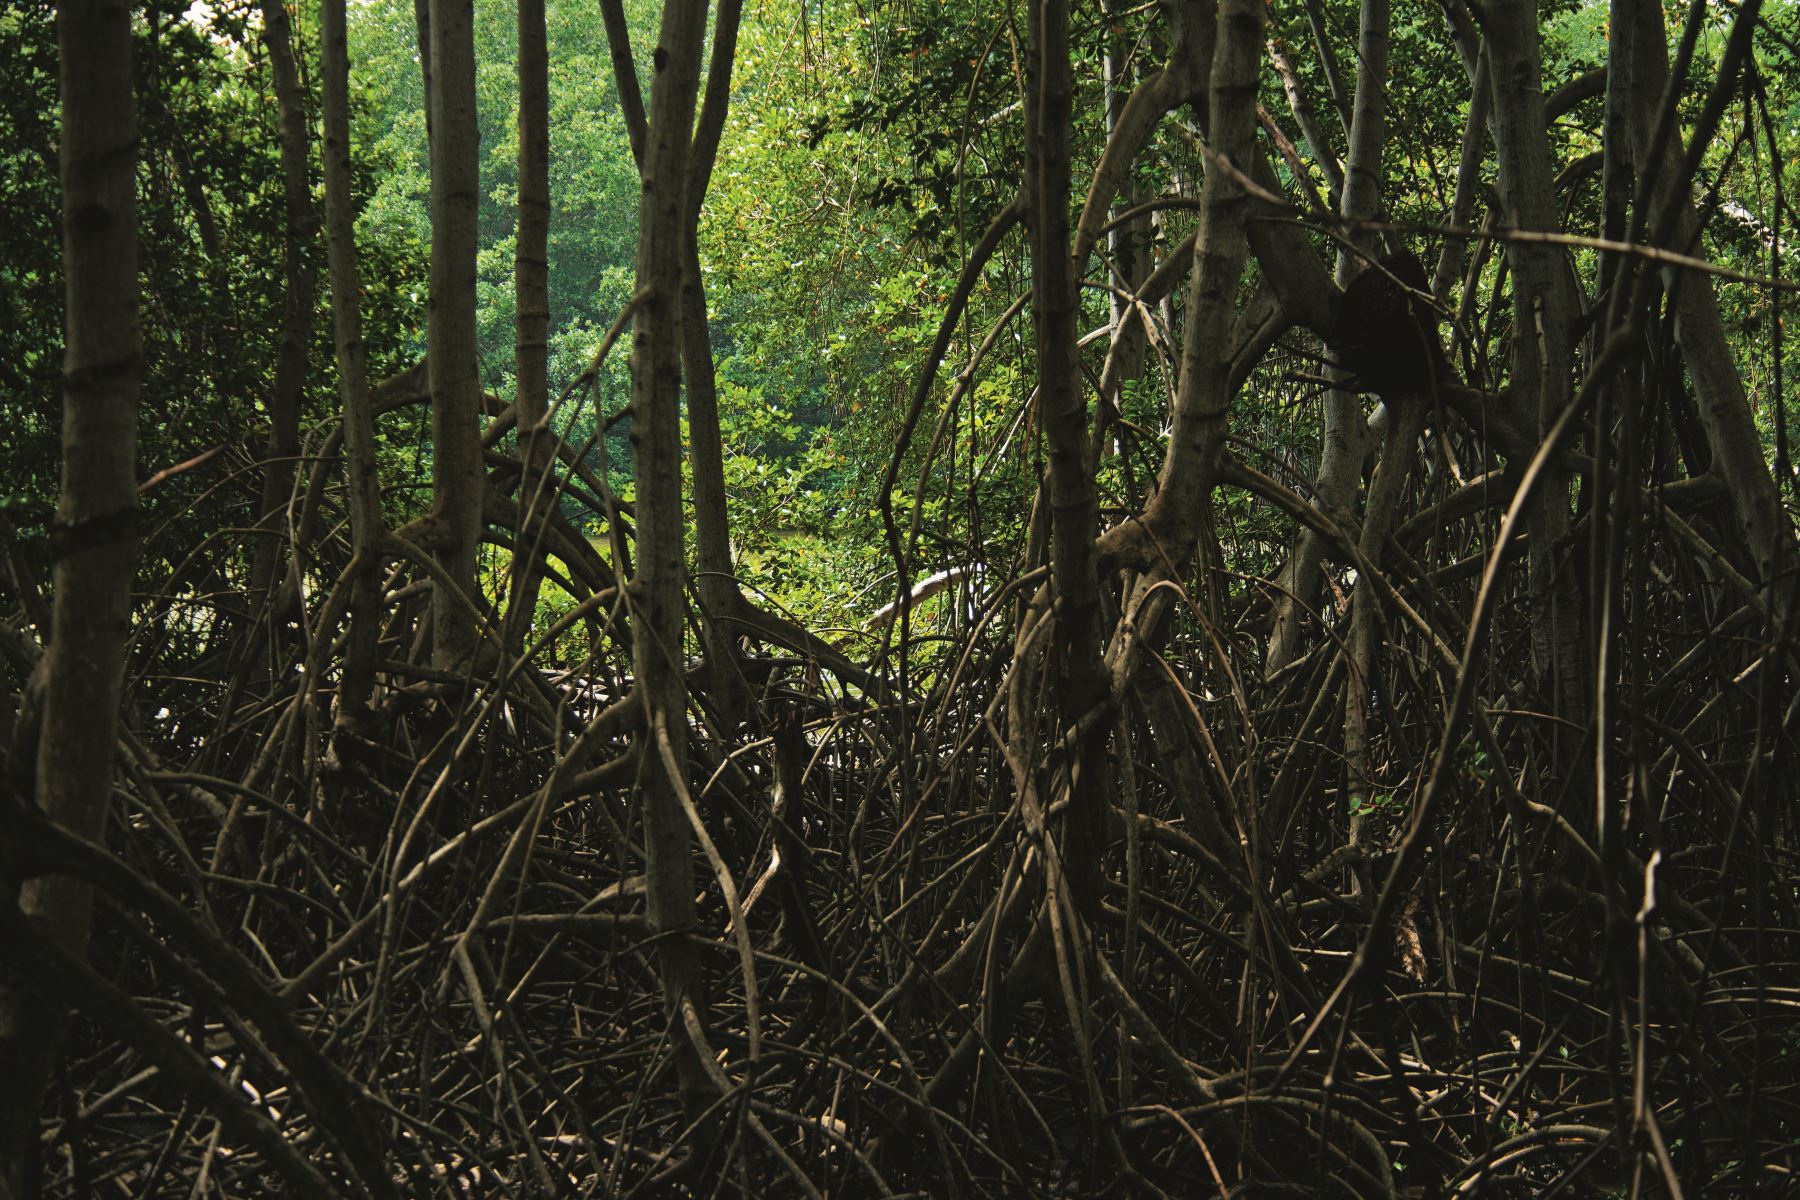 El Santuario custodia el majestuoso bosque de manglar y protege una alta diversidad biológica, además de incentivar la recreación y aumentar las corrientes turísticas en los lugares aledaños.
Foto: Sernanp/Walter Wust